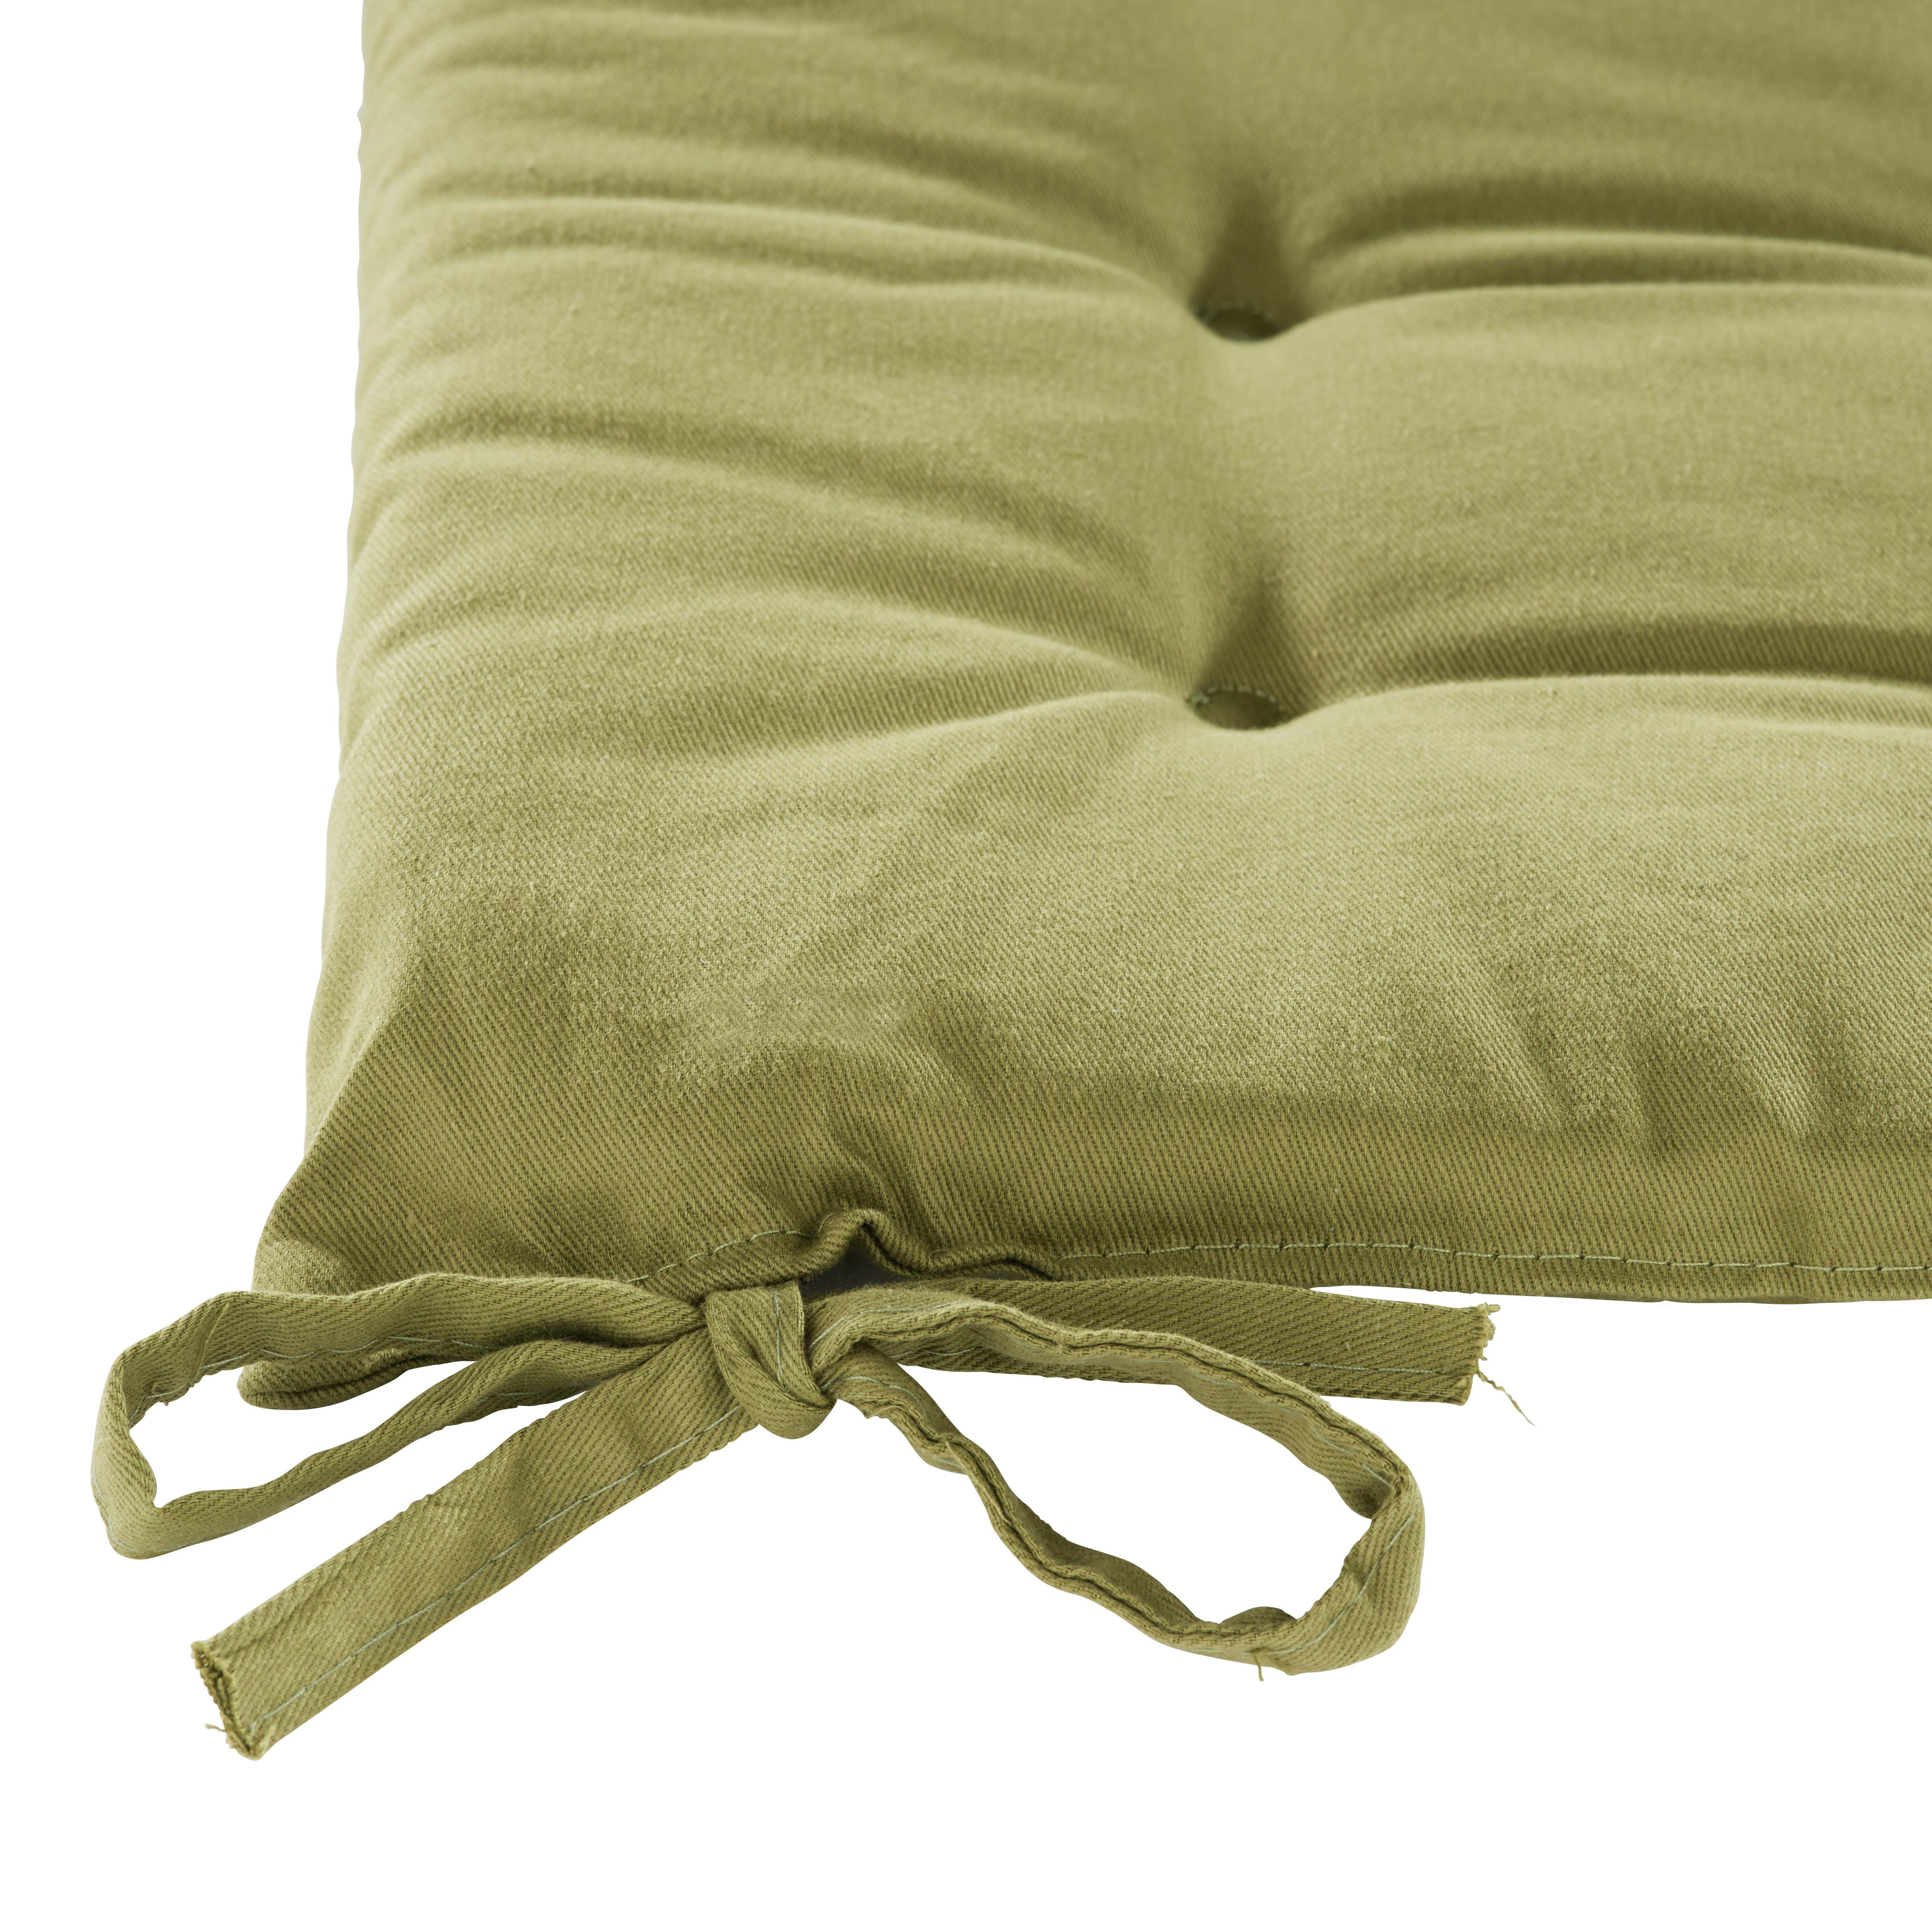 Poduška Na Sedenie Lola,  40/40/2cm, Zelená - zelená, textil (40/40/2cm) - Based